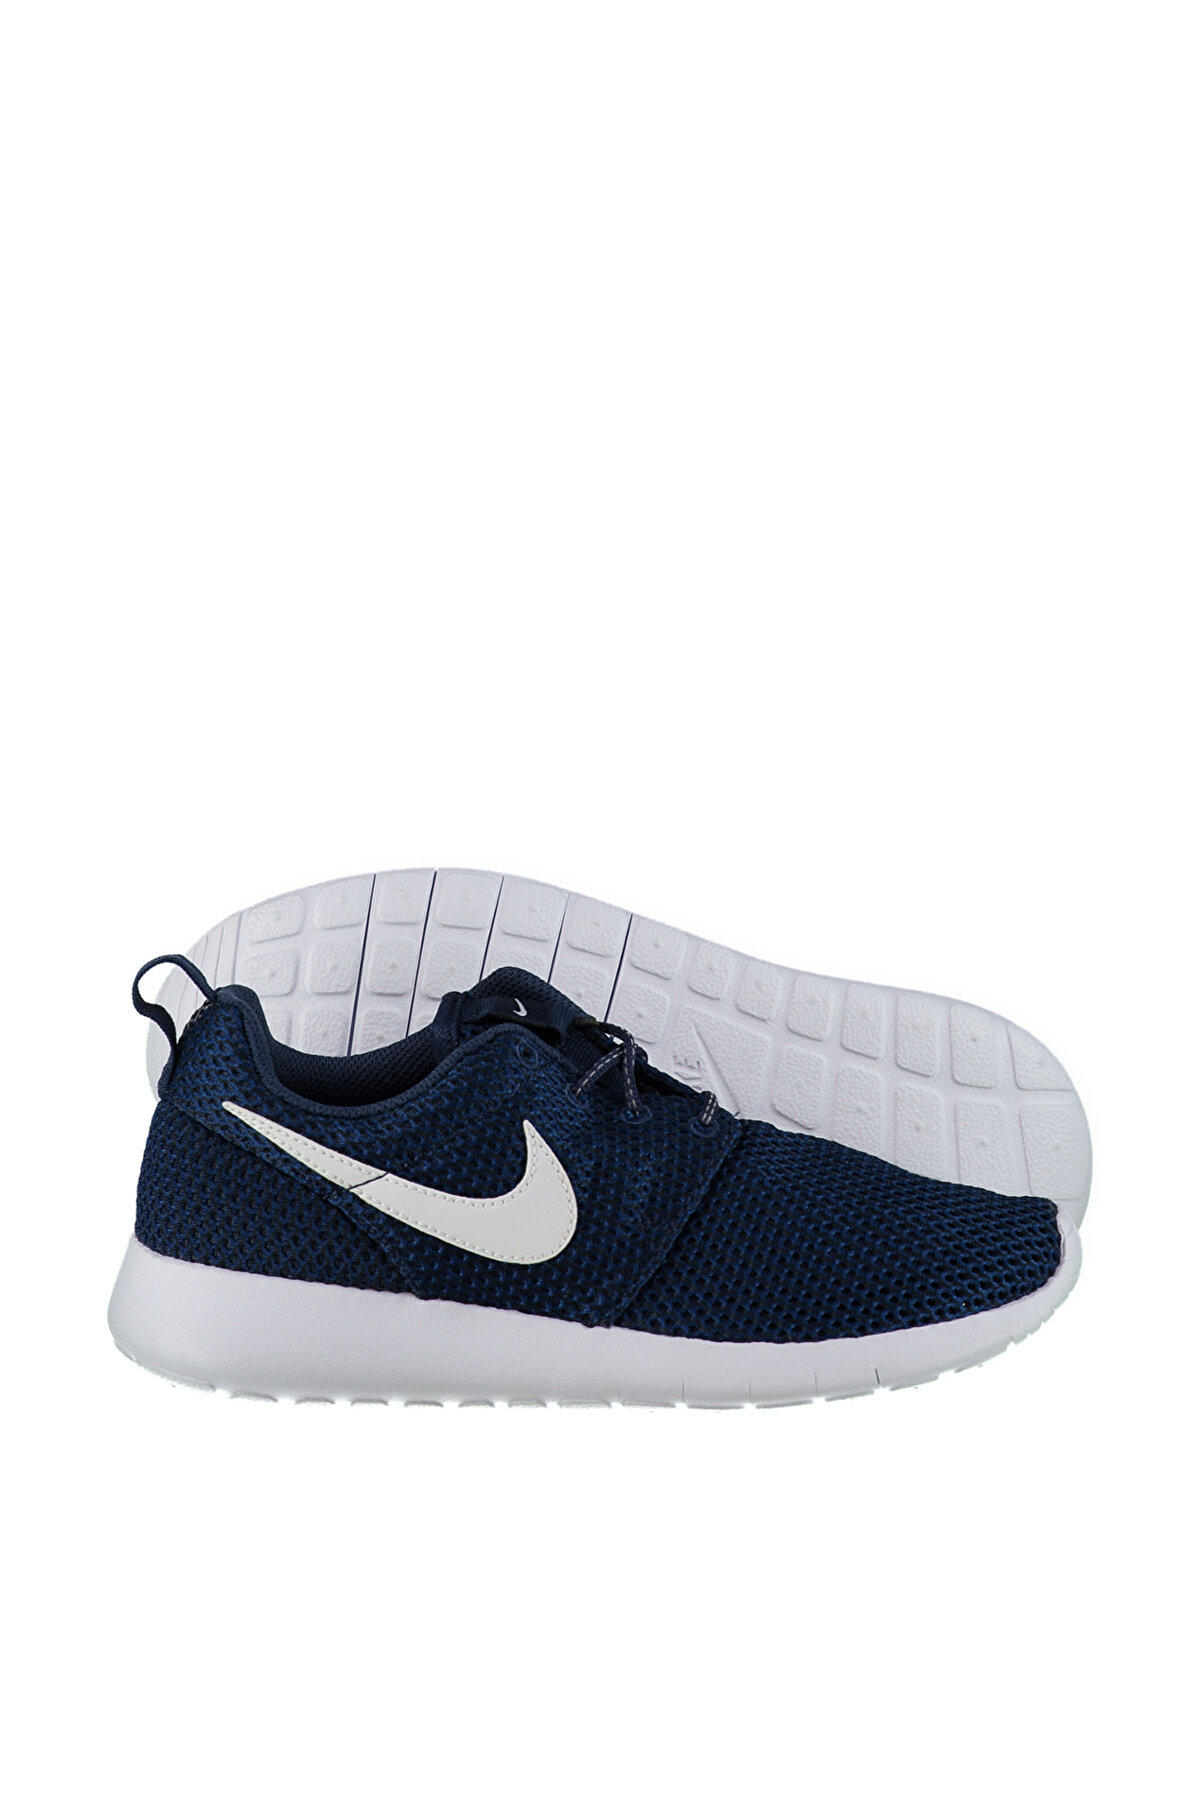 Nike Kadın Spor Ayakkabı - Roshe Run - 599728-423